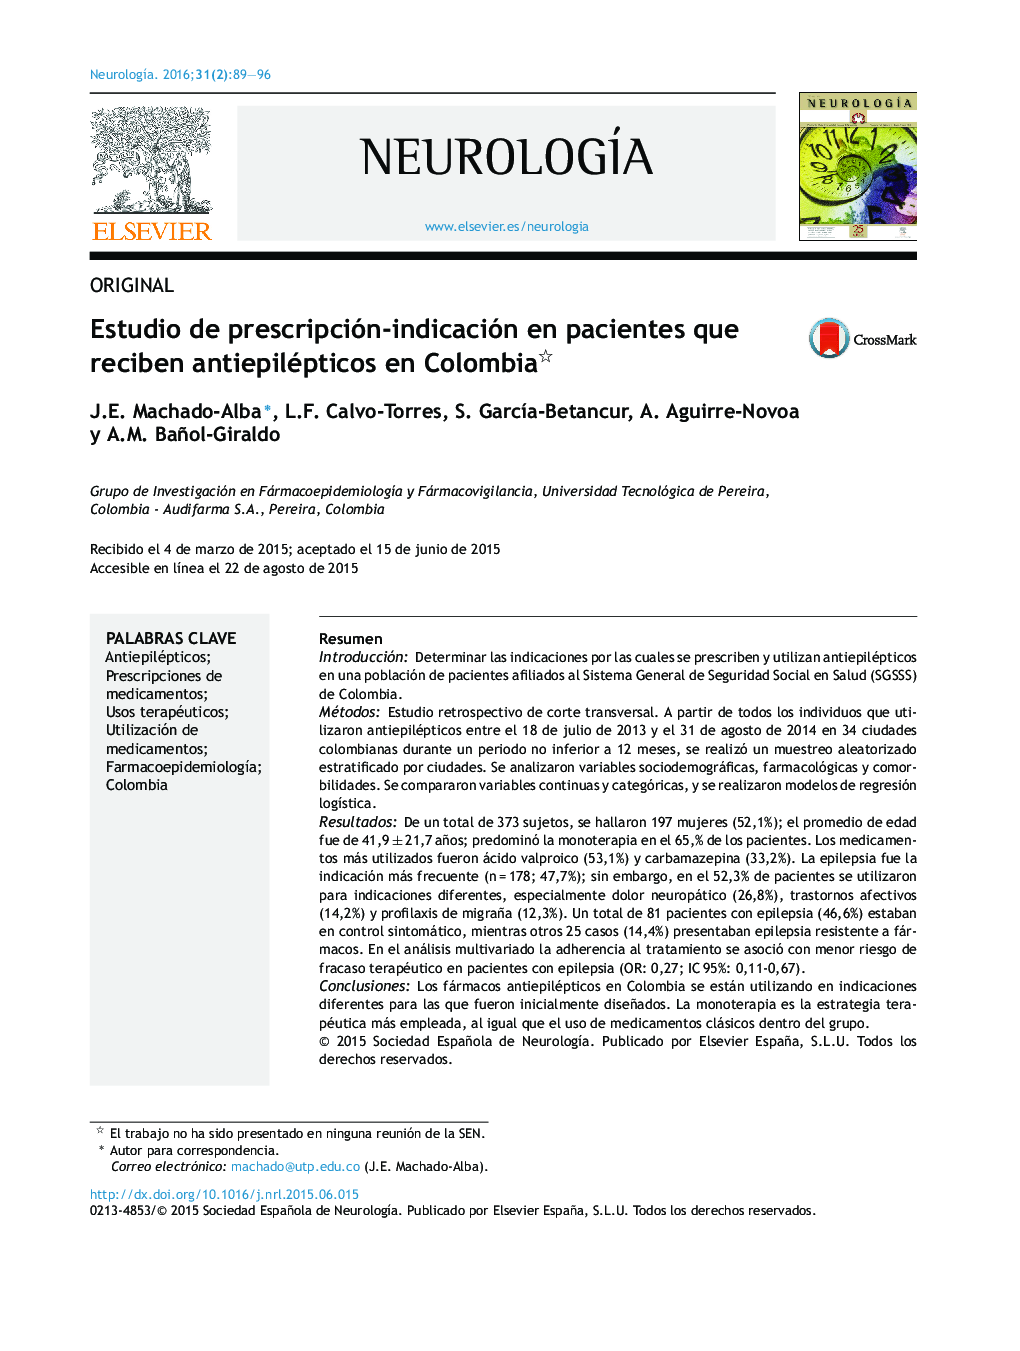 Estudio de prescripción-indicación en pacientes que reciben antiepilépticos en Colombia 